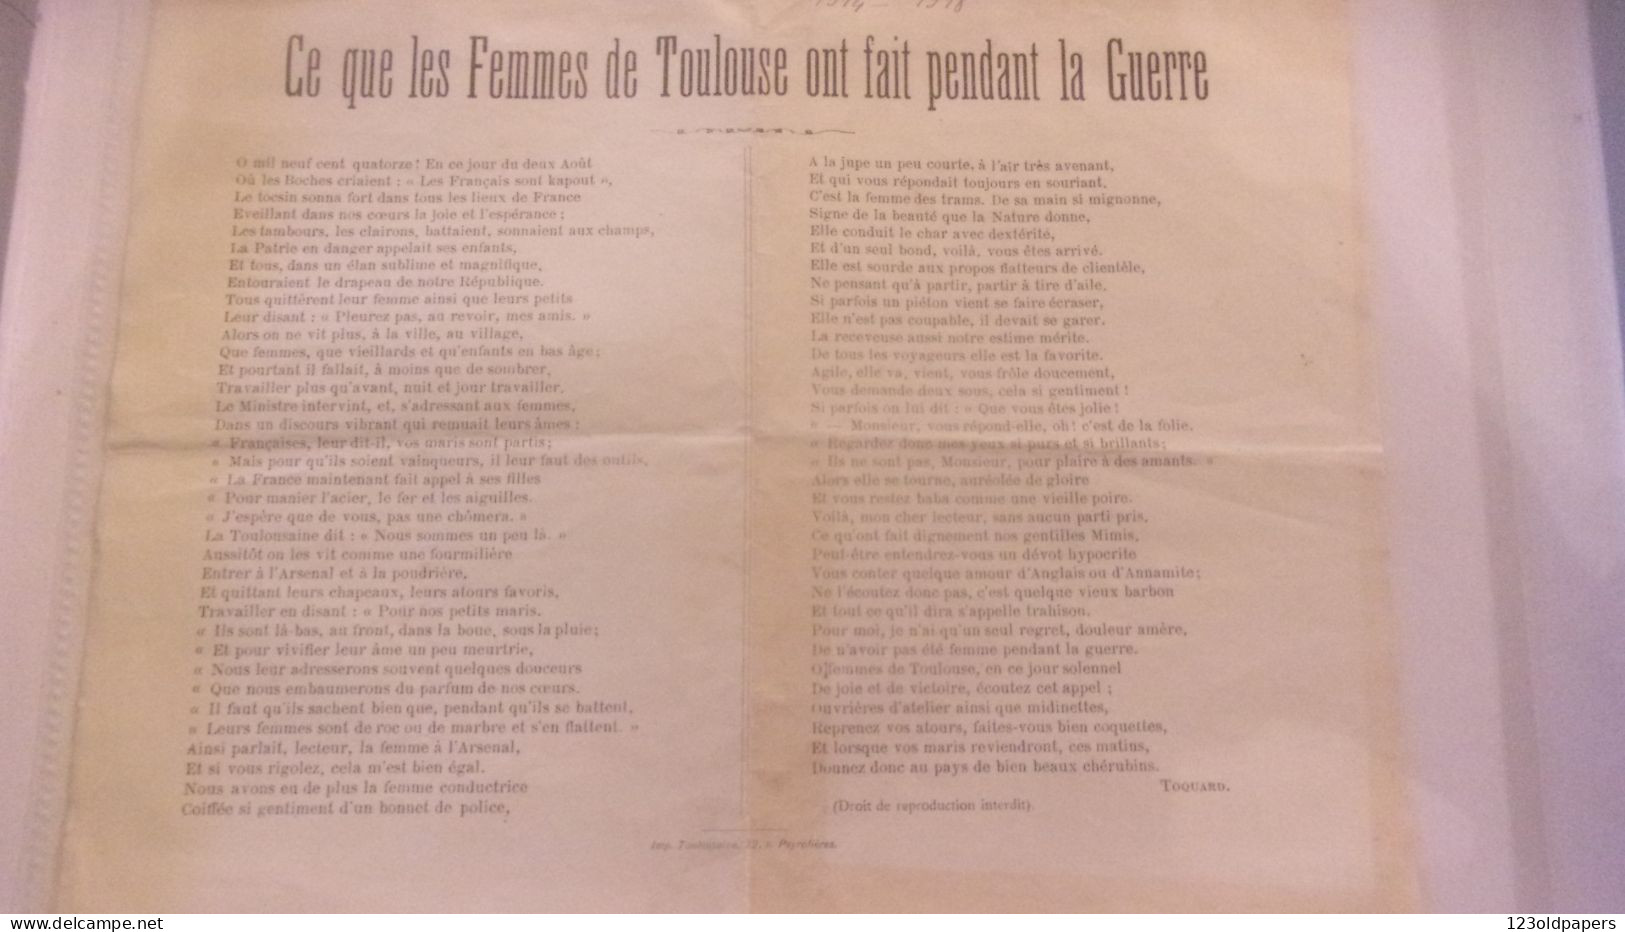 WWI CE QUE LES FEMMES DE TOULOUSE ON FAIT PENDANT LA GUERRE TOQUARD - 1914-18